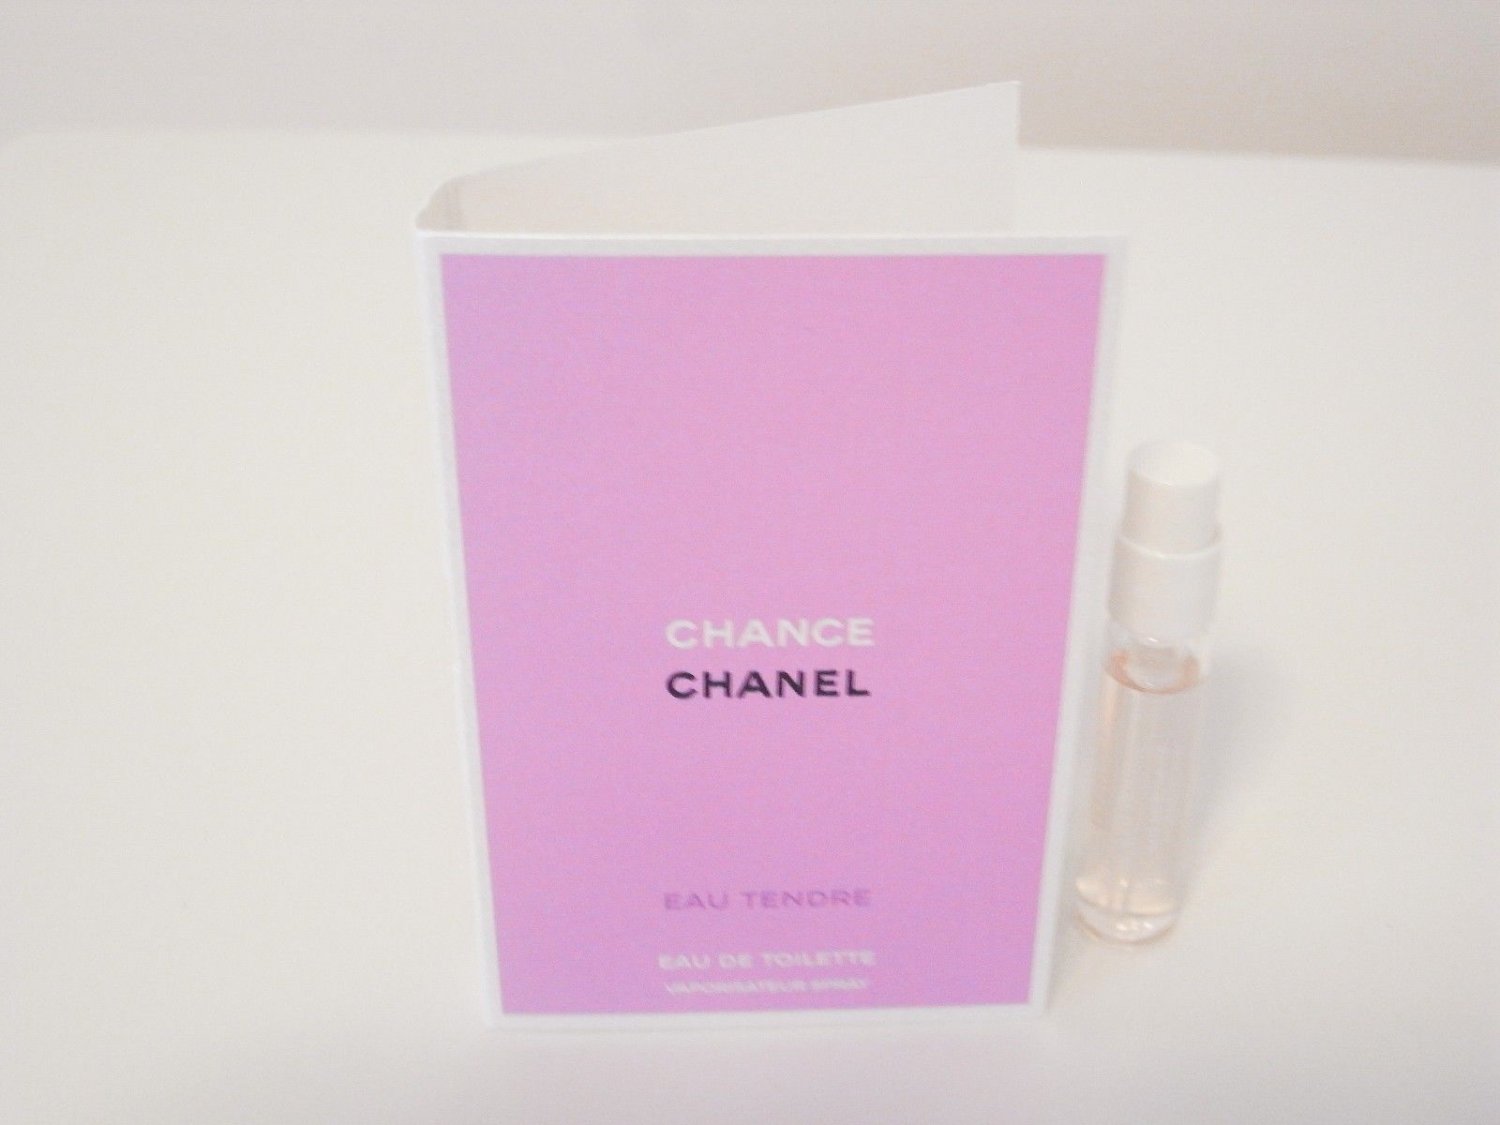 Chanel Chance Eau Tendre eau de toilette 2ml vial